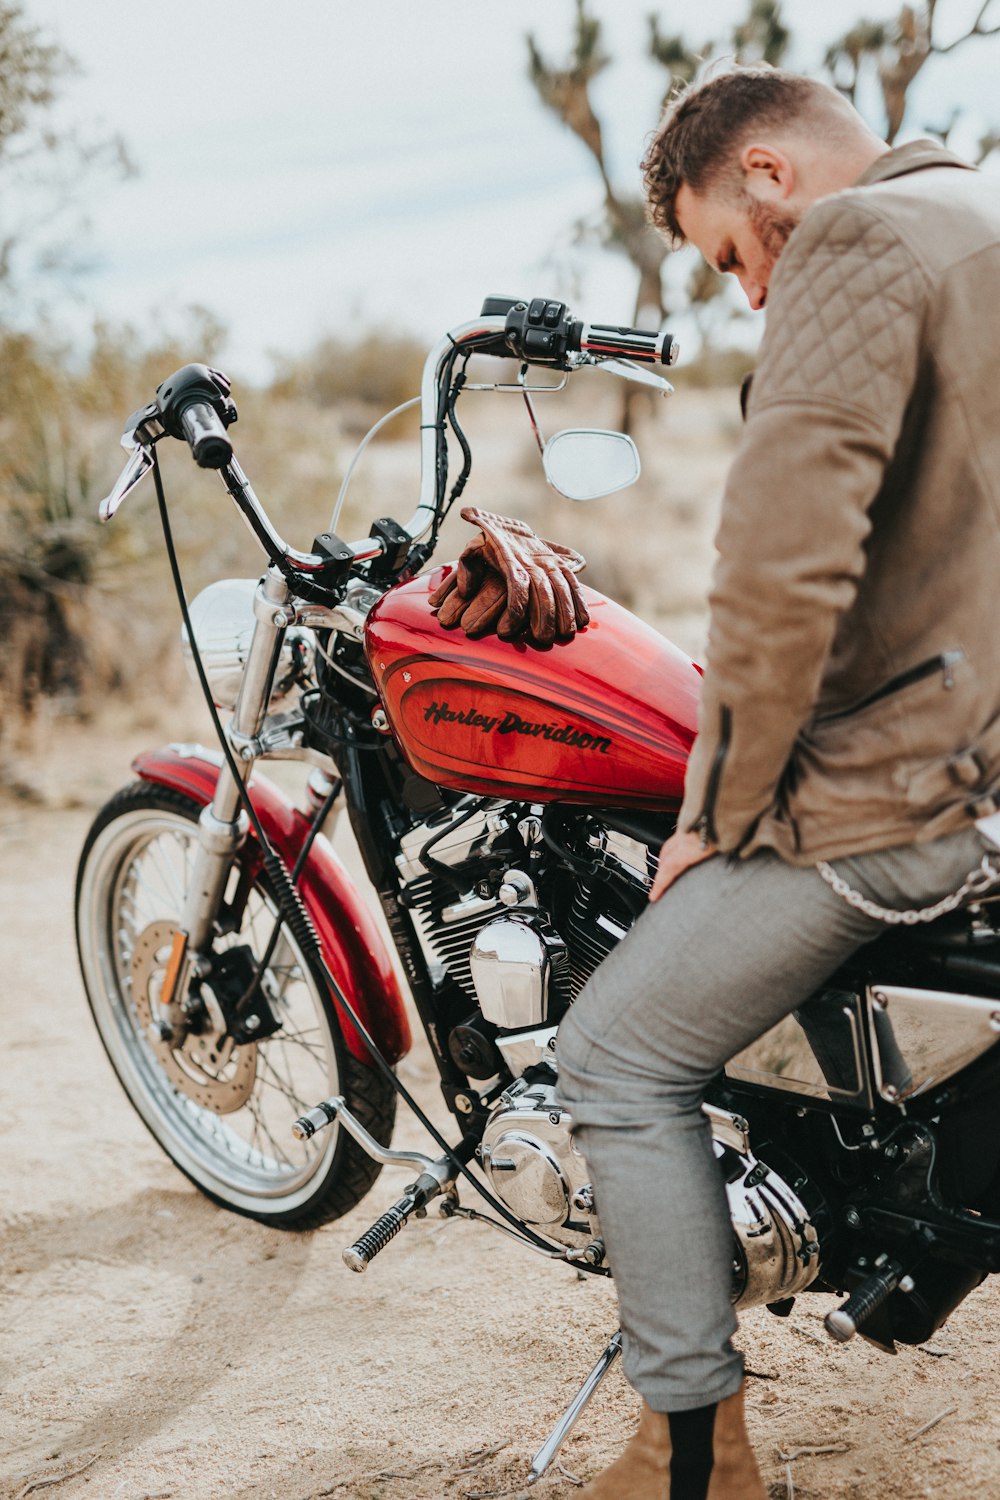 hombre se sienta en una motocicleta Harley-Davidson roja y negra durante el día